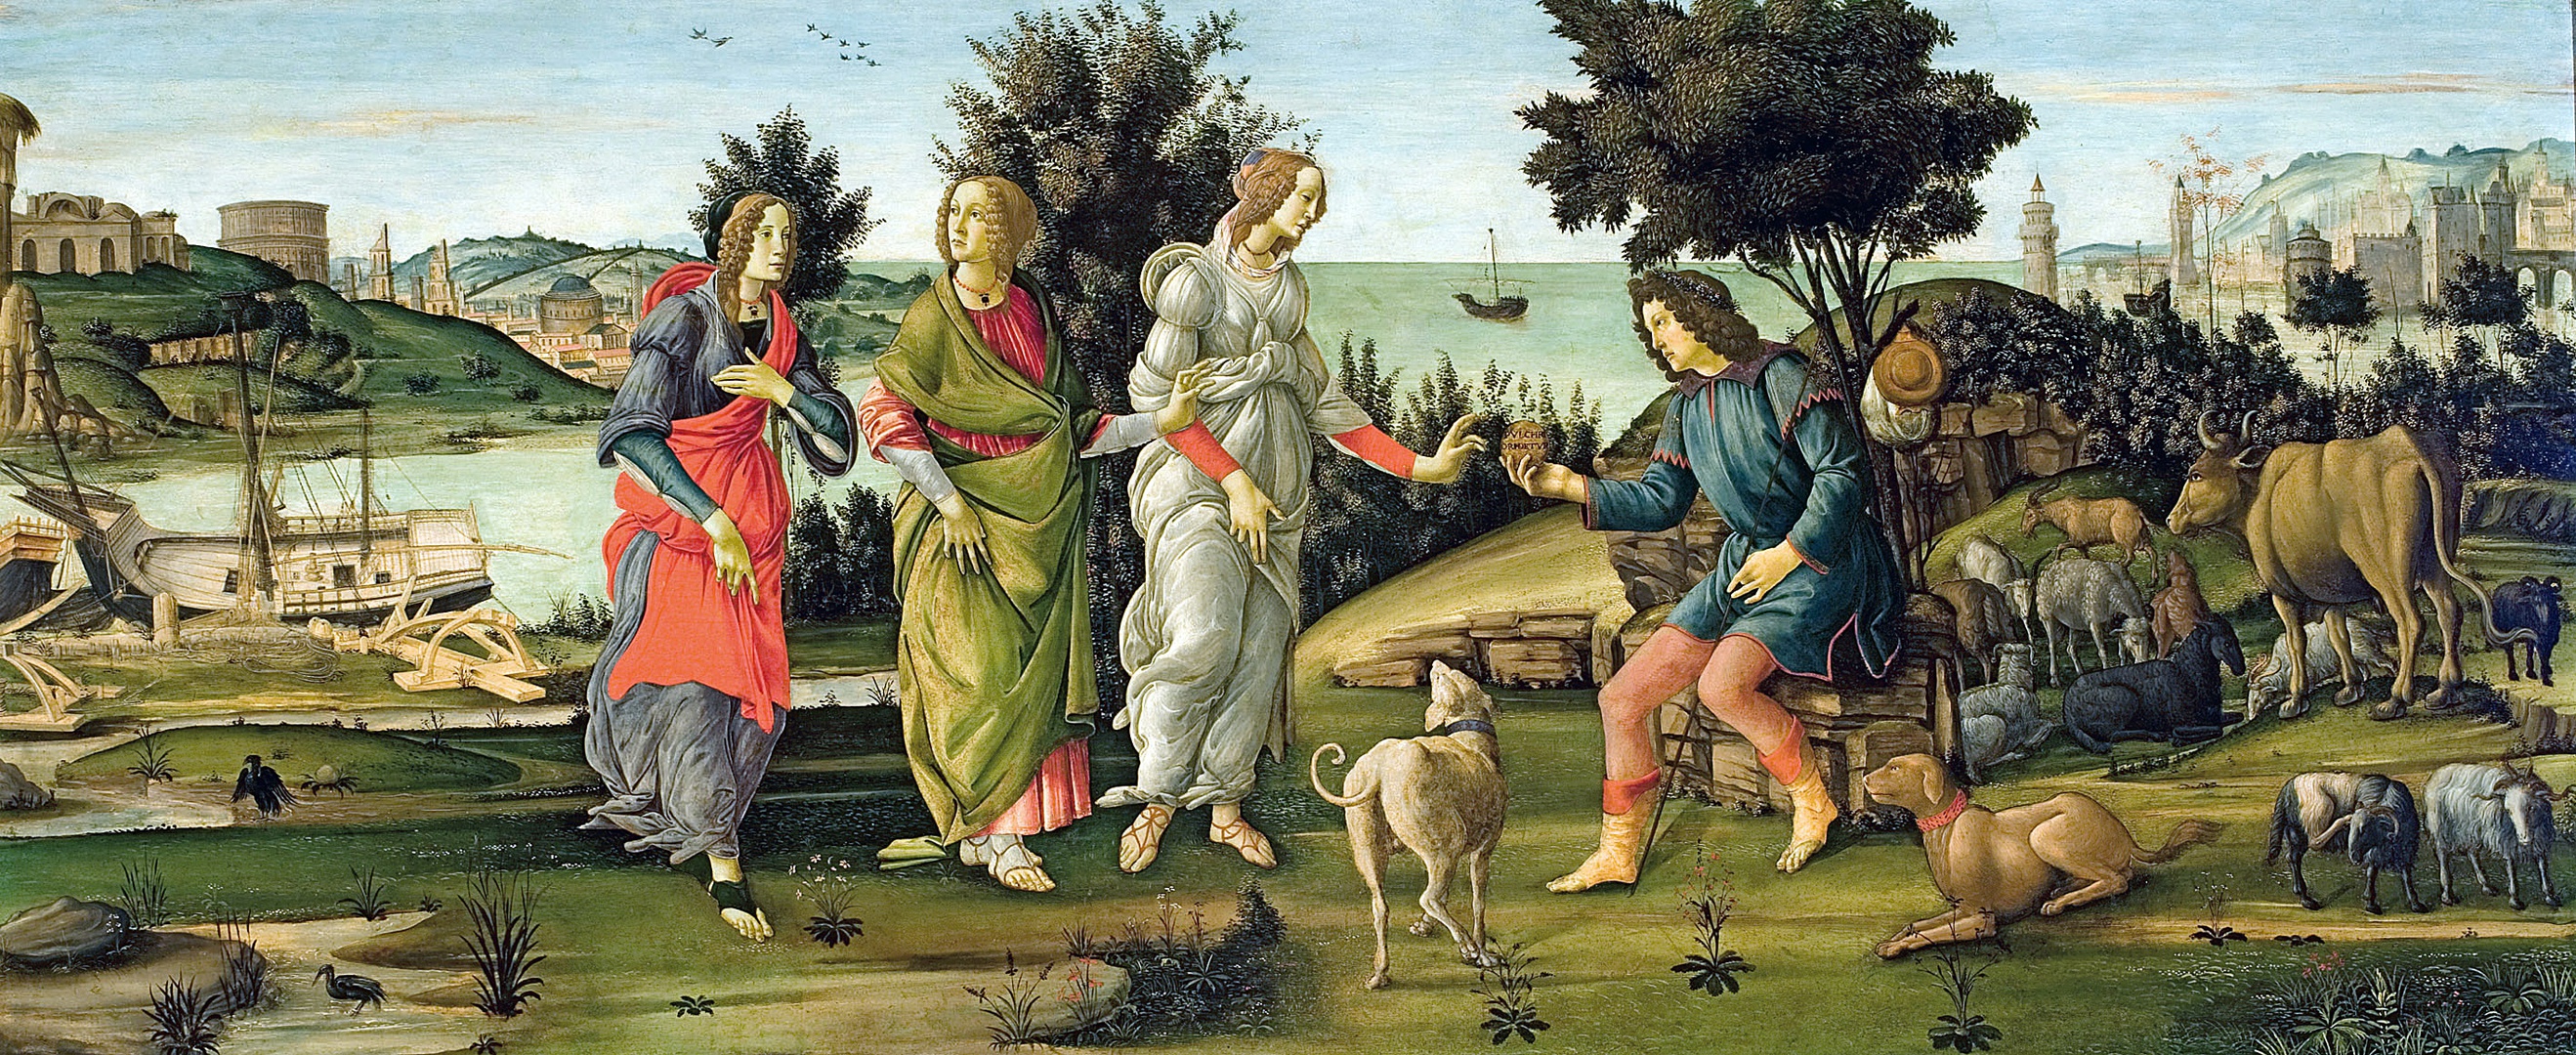 Birth of Venus - Botticelli 